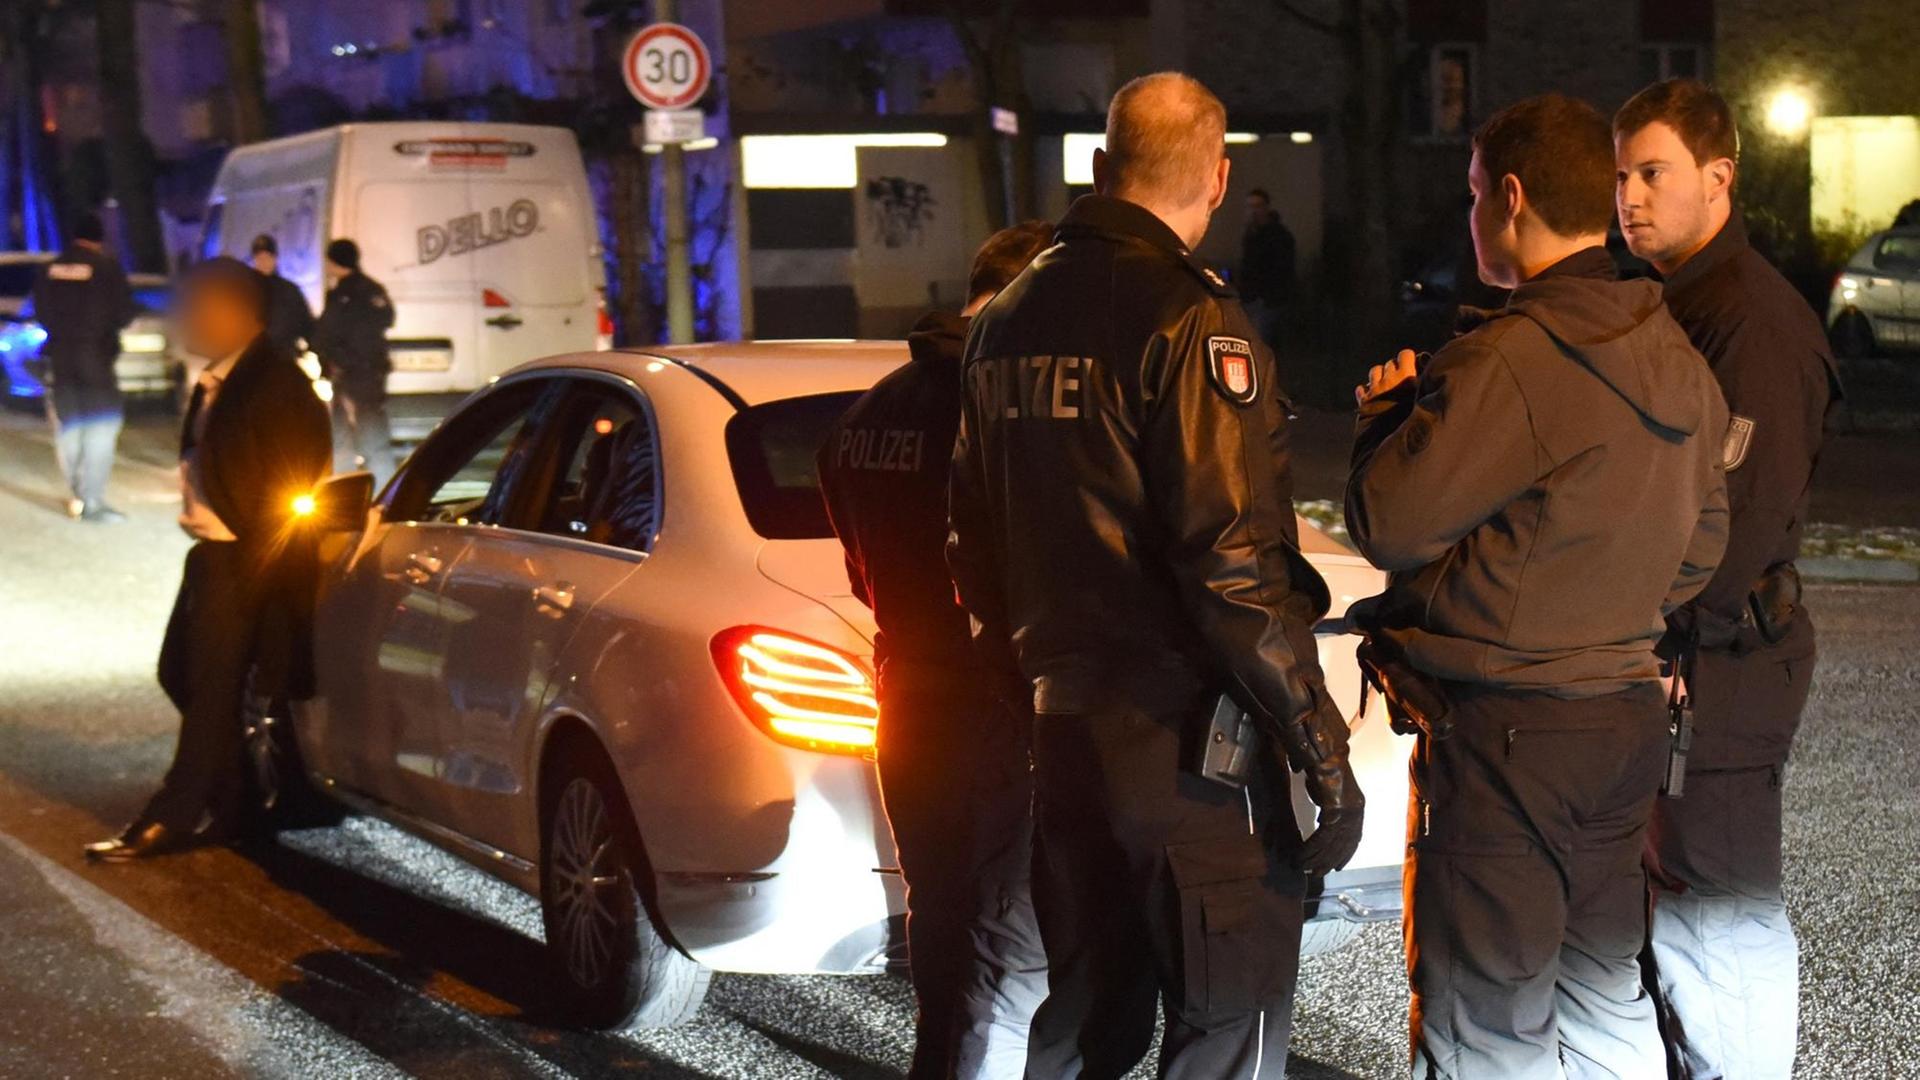 19.01.2019, Hamburg: Polizisten kontrollieren am frühen Abend im Stadtteil Mümmelmannsberg ein Auto.